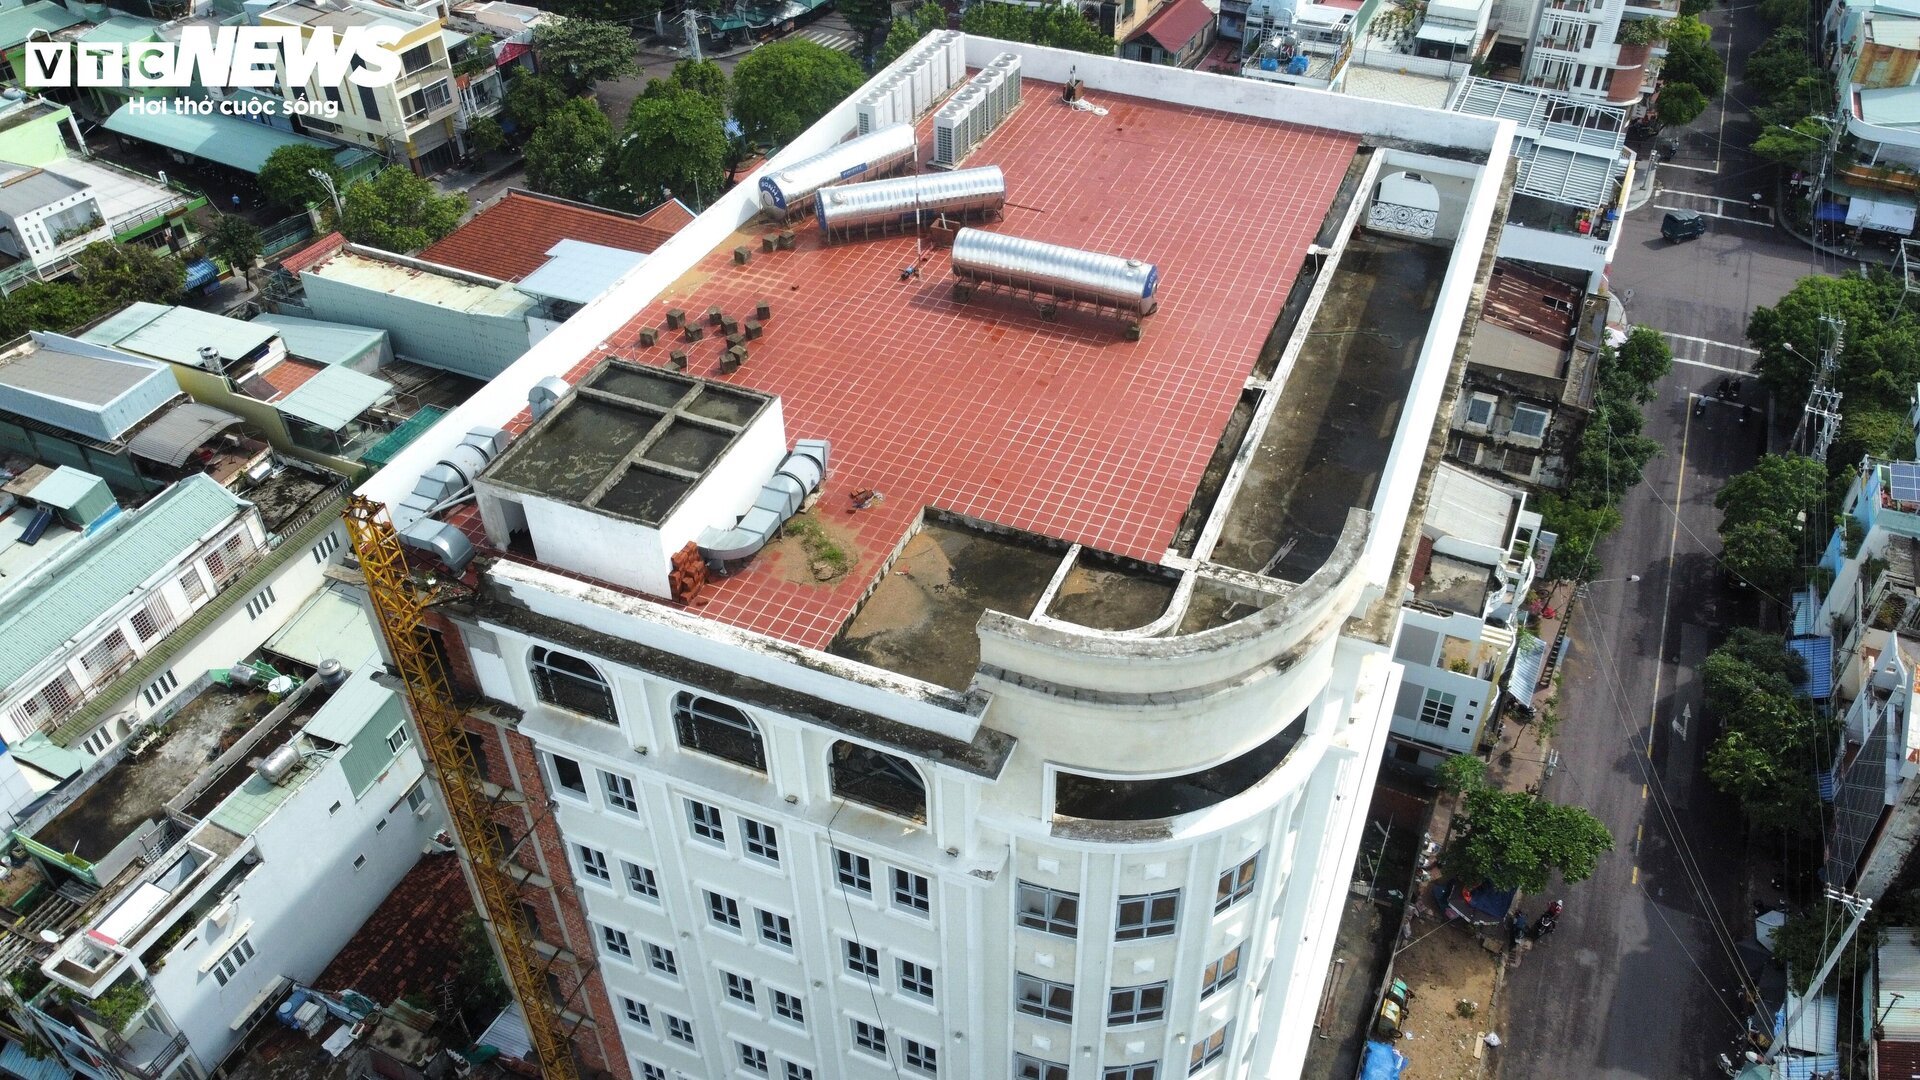 Tòa nhà trăm tỷ, xây gần 10 năm chưa xong của nữ giám đốc vừa bị bắt ở Bình Định - Ảnh 3.